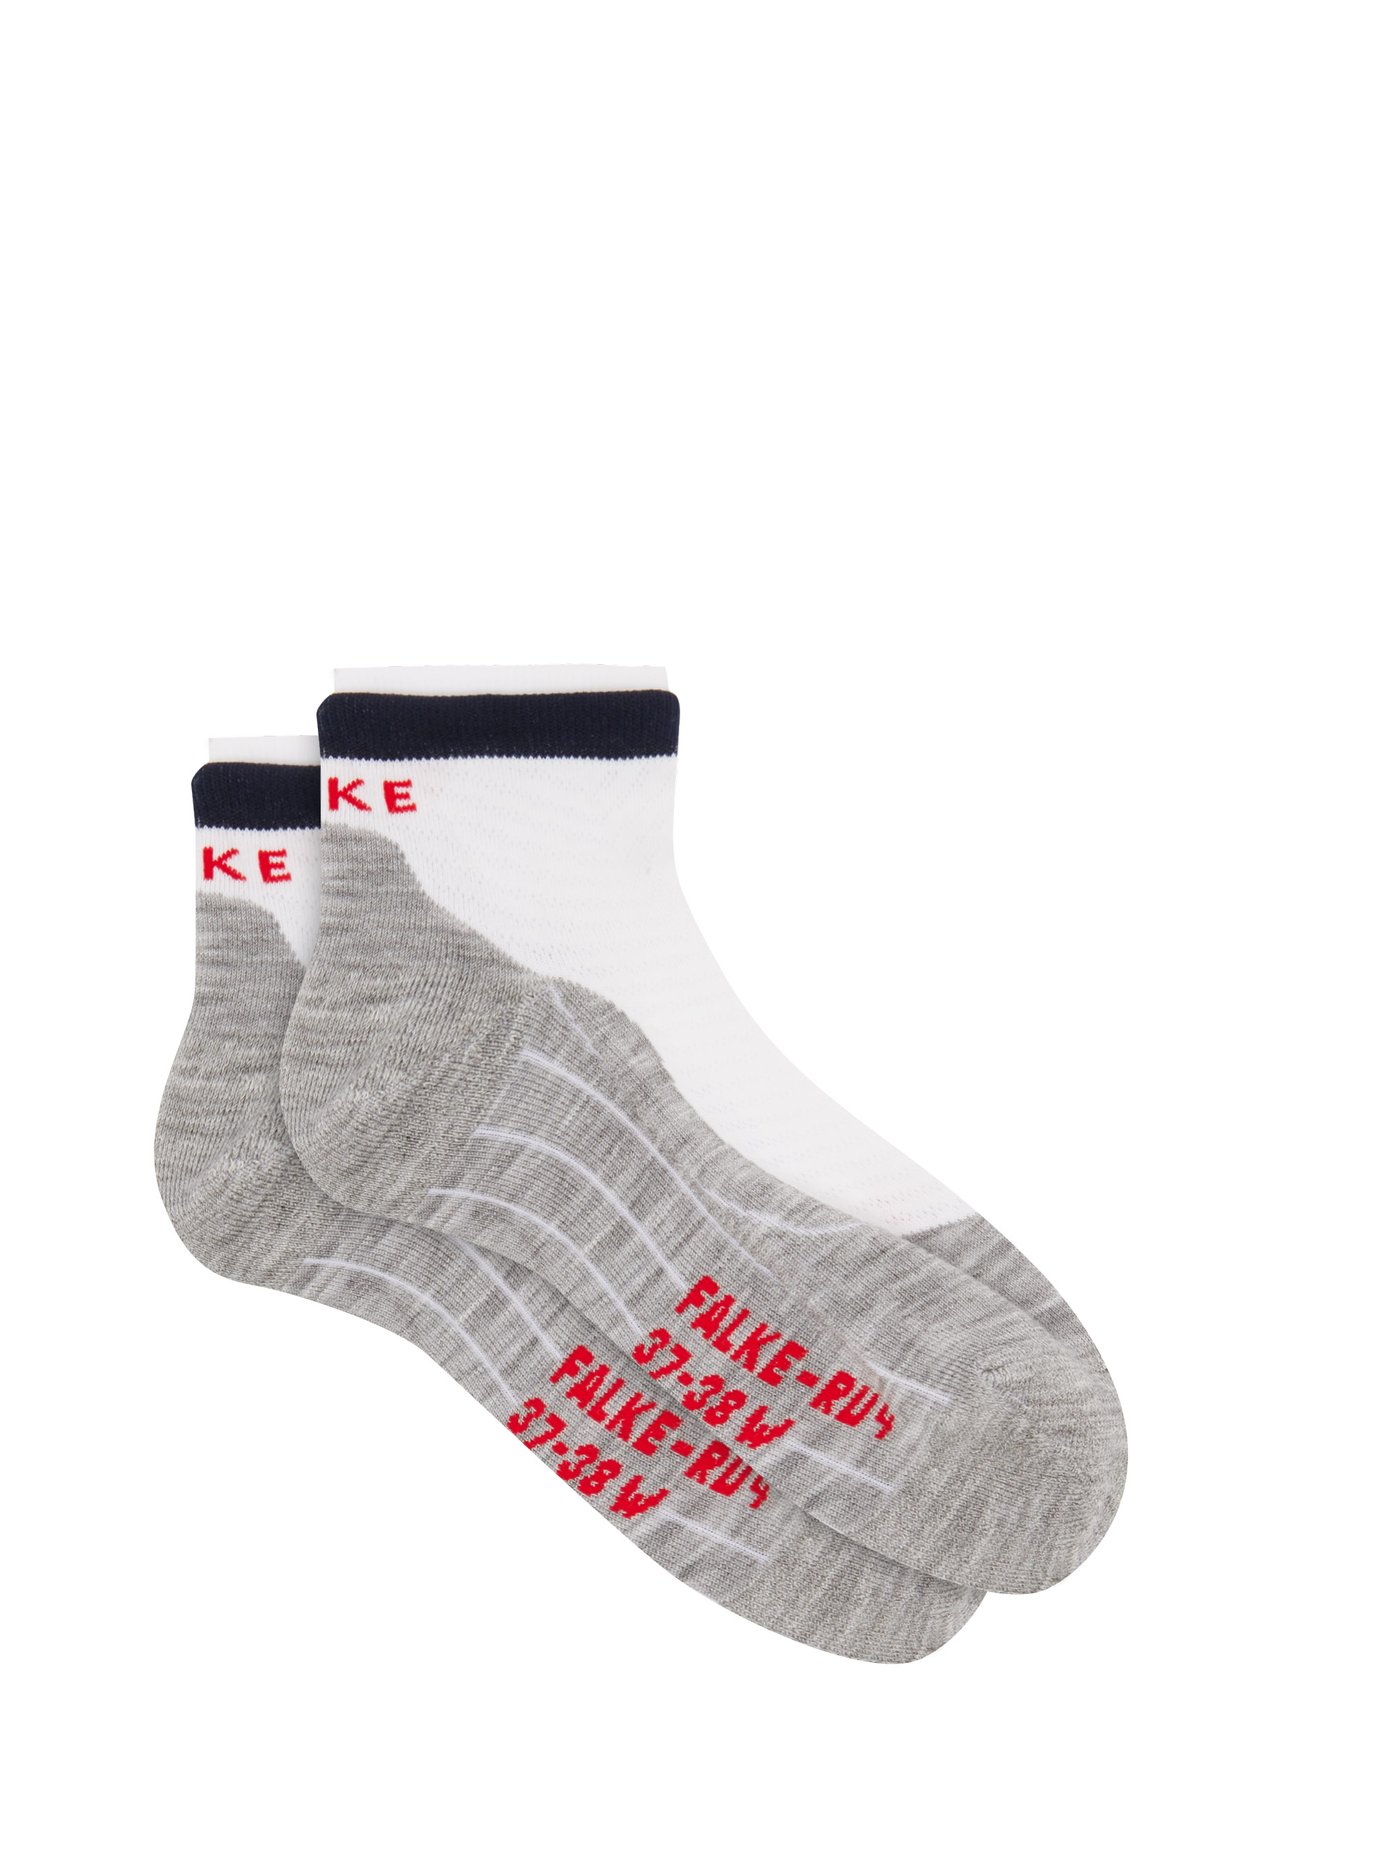 blister proof running socks